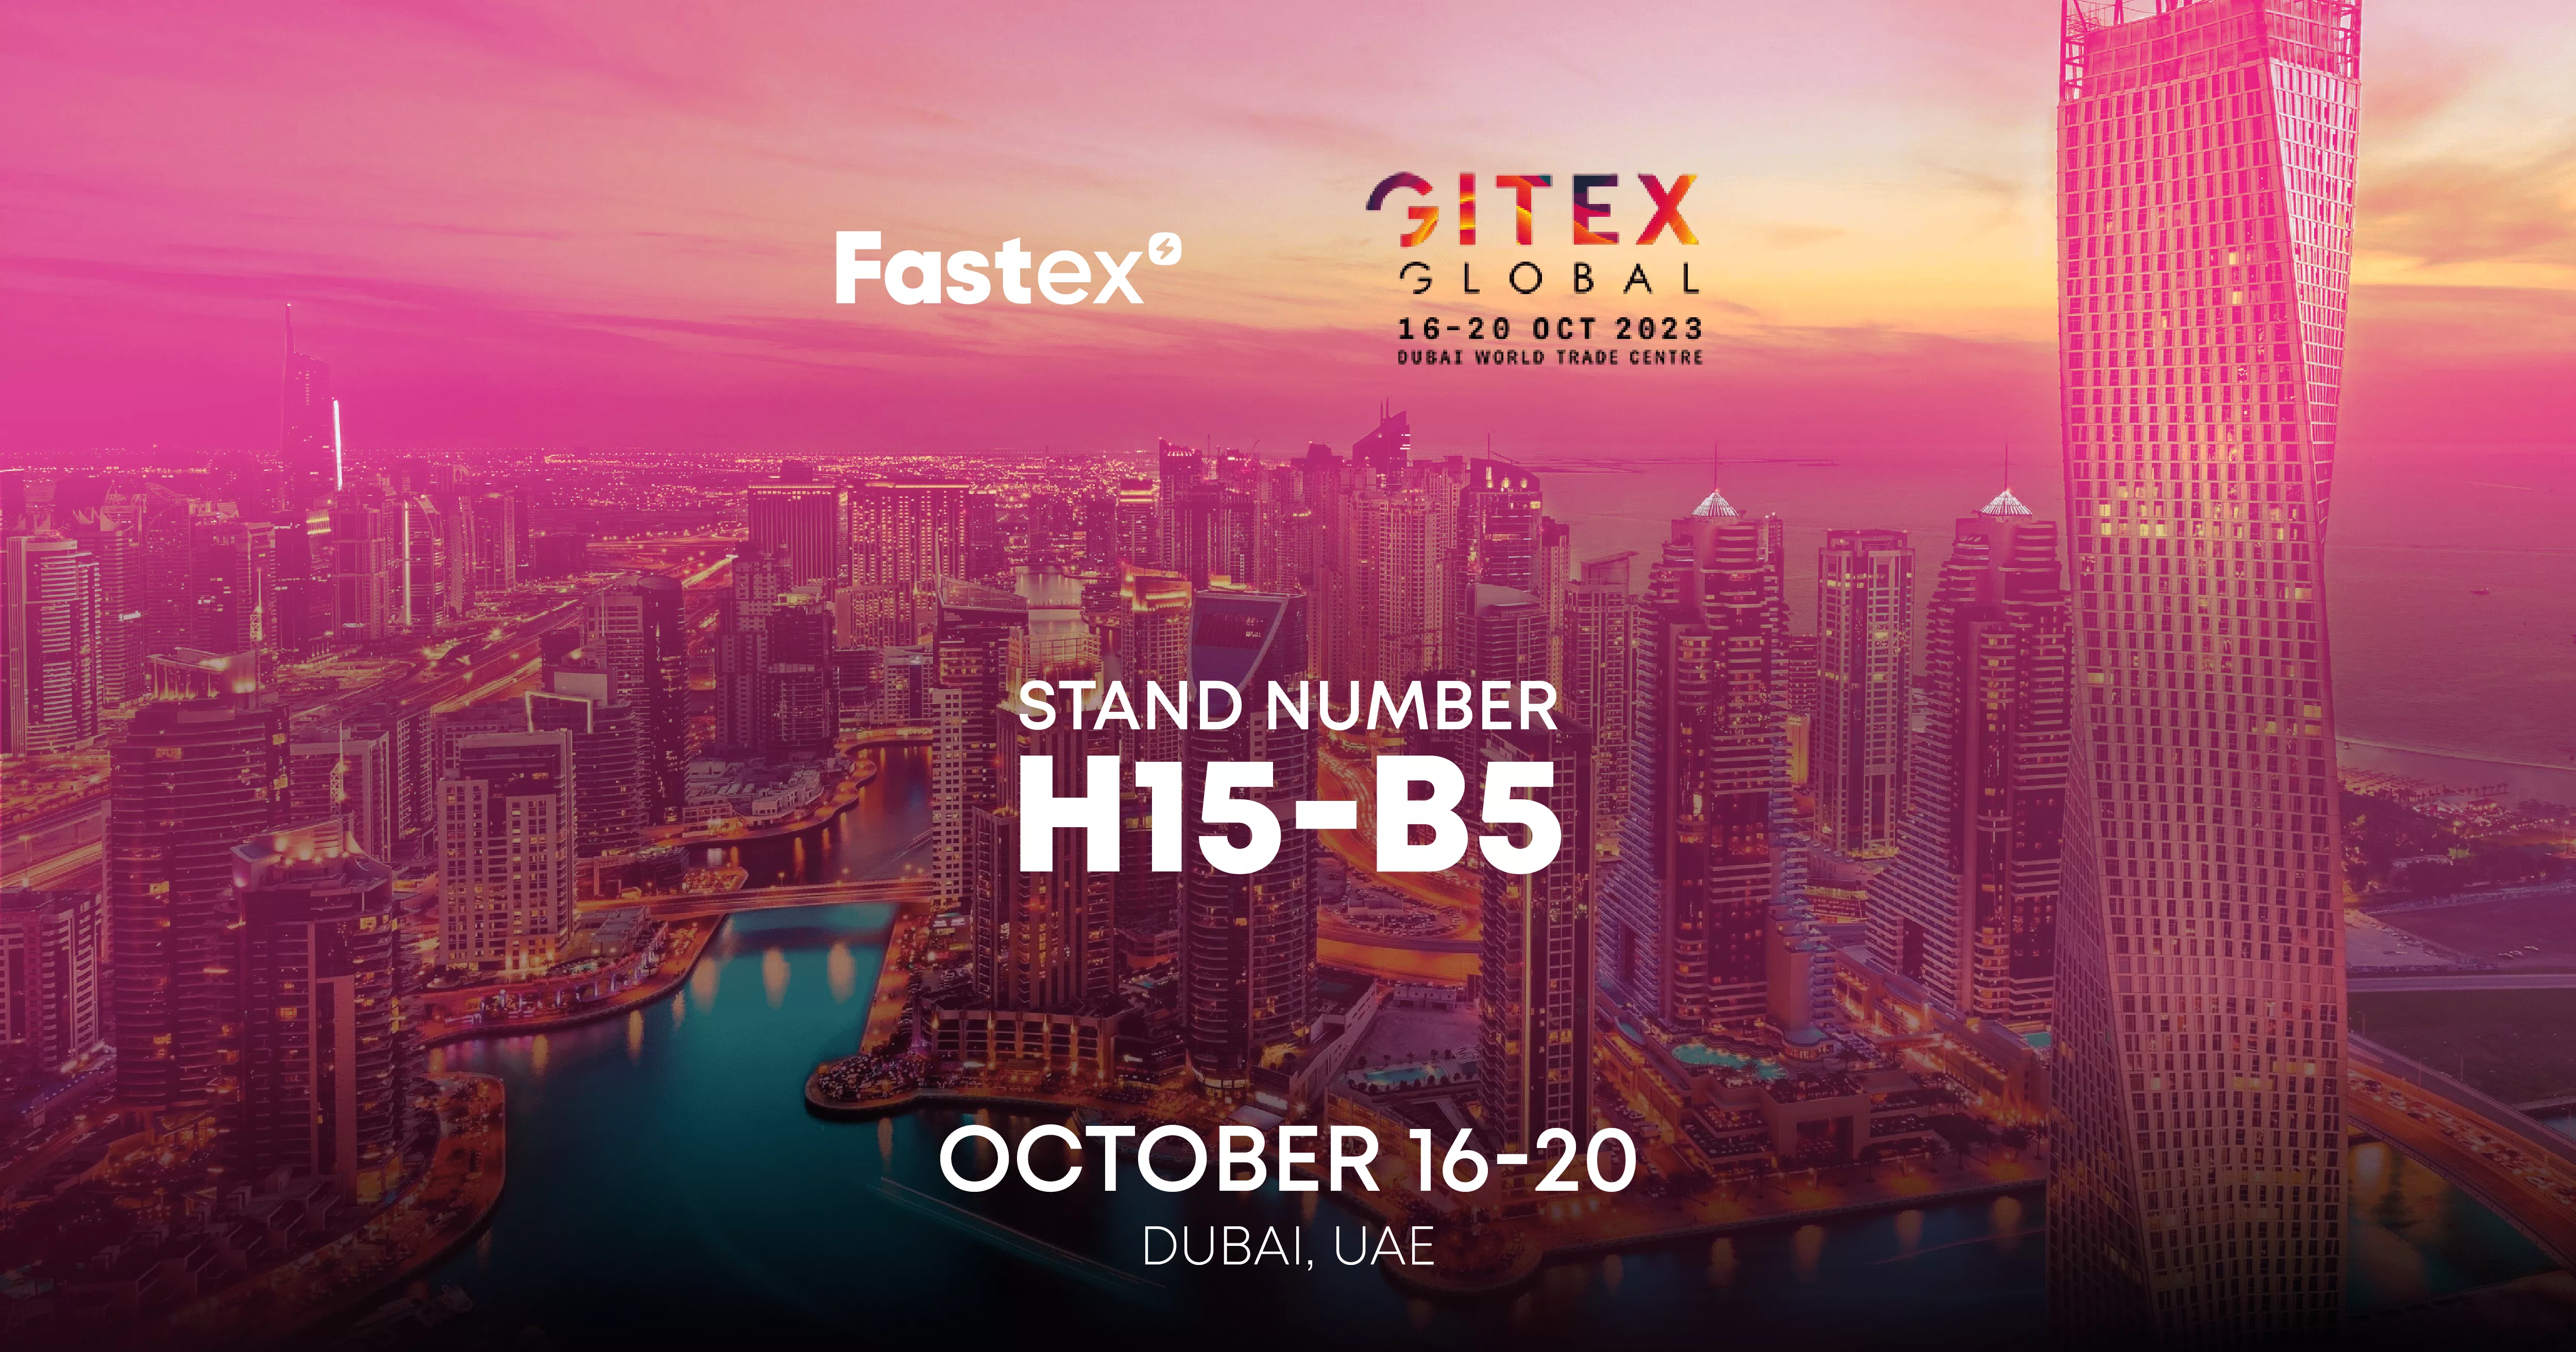 Fastex-ը GITEX 2023-ի շրջանակում կներկայացնի իր նորարարական նախագծերը և բրենդները